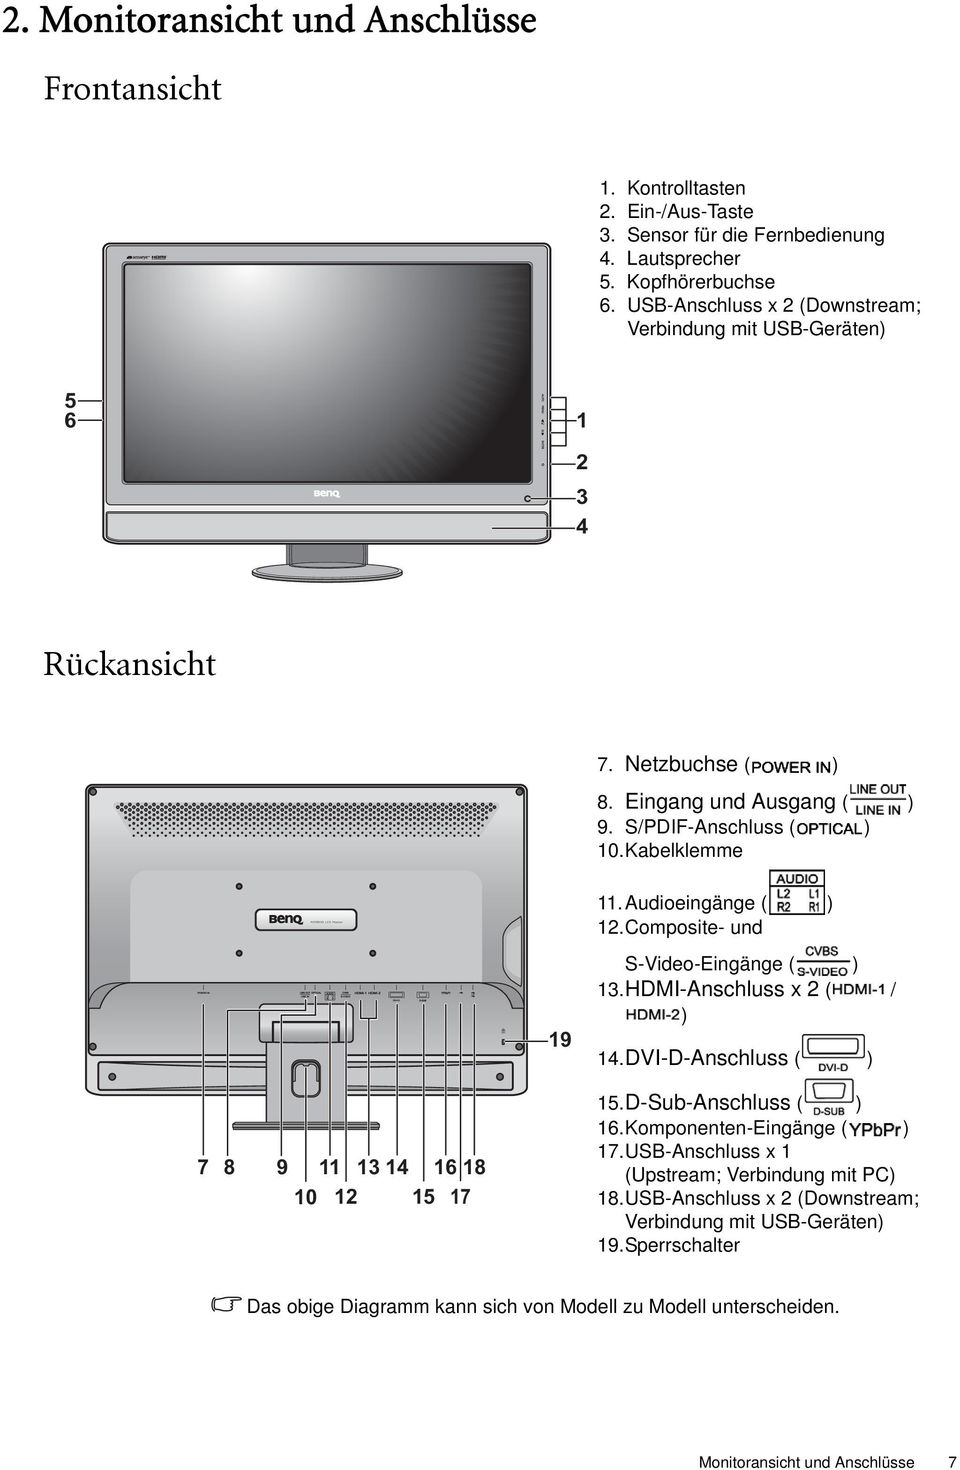 Audioeingänge ( ) 12.Composite- und 19 S-Video-Eingänge ( ) 13.HDMI-Anschluss x 2 ( / ) 14.DVI-D-Anschluss ( ) 7 8 9 11 13 14 16 18 10 12 15 17 15.D-Sub-Anschluss ( ) 16.